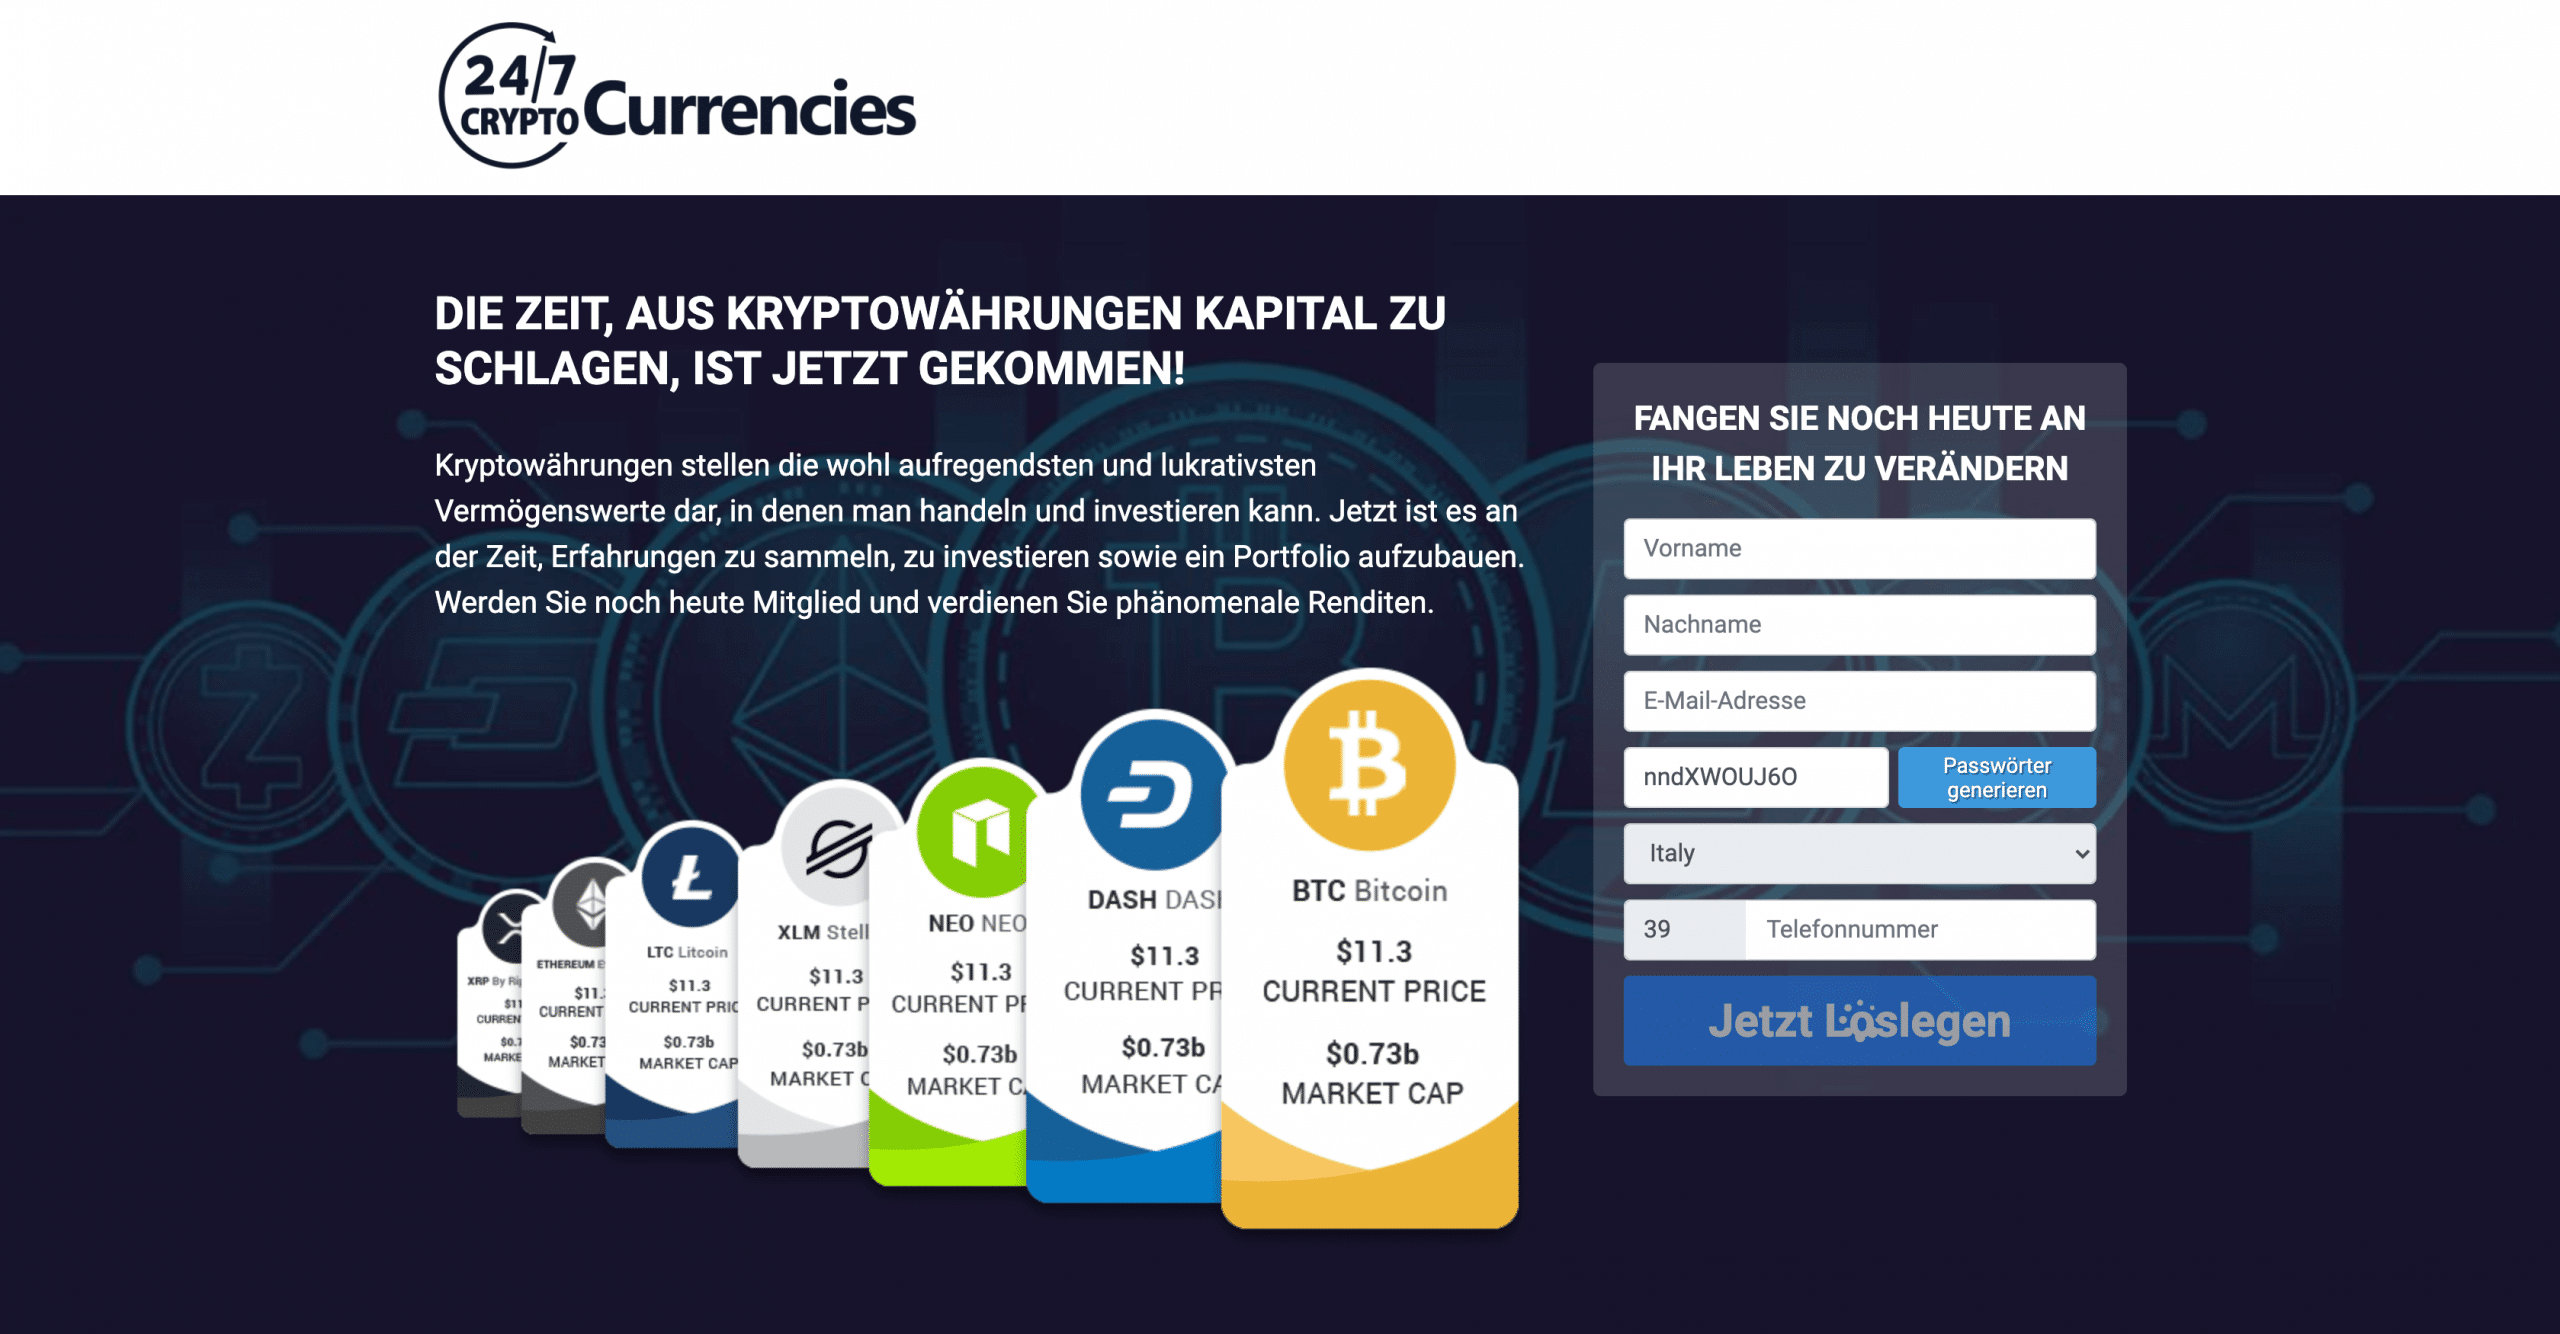 247 crypto currencies